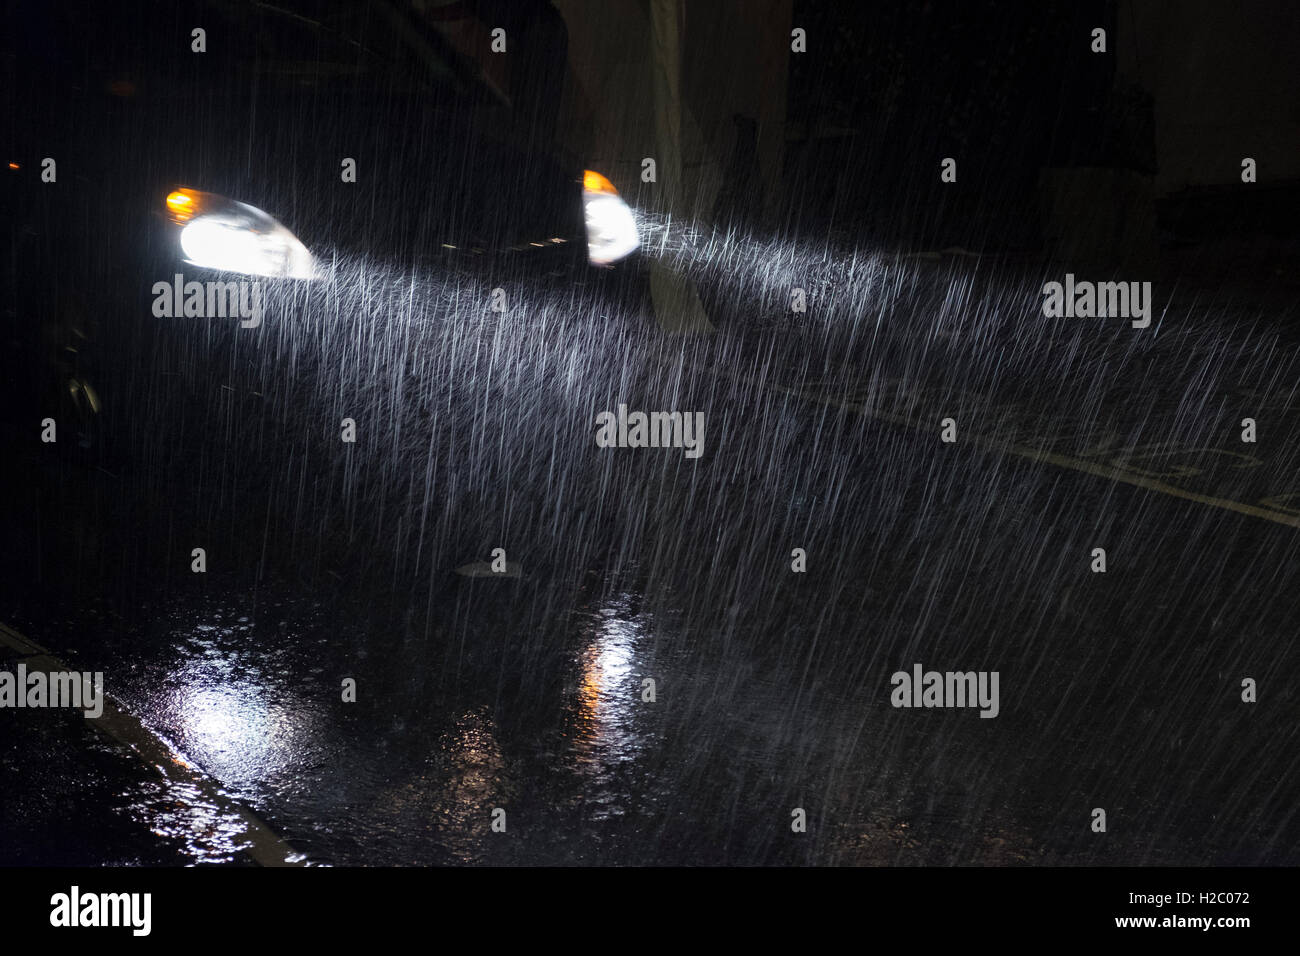 A cars headlights shine through heavy rain at night Stock Photo